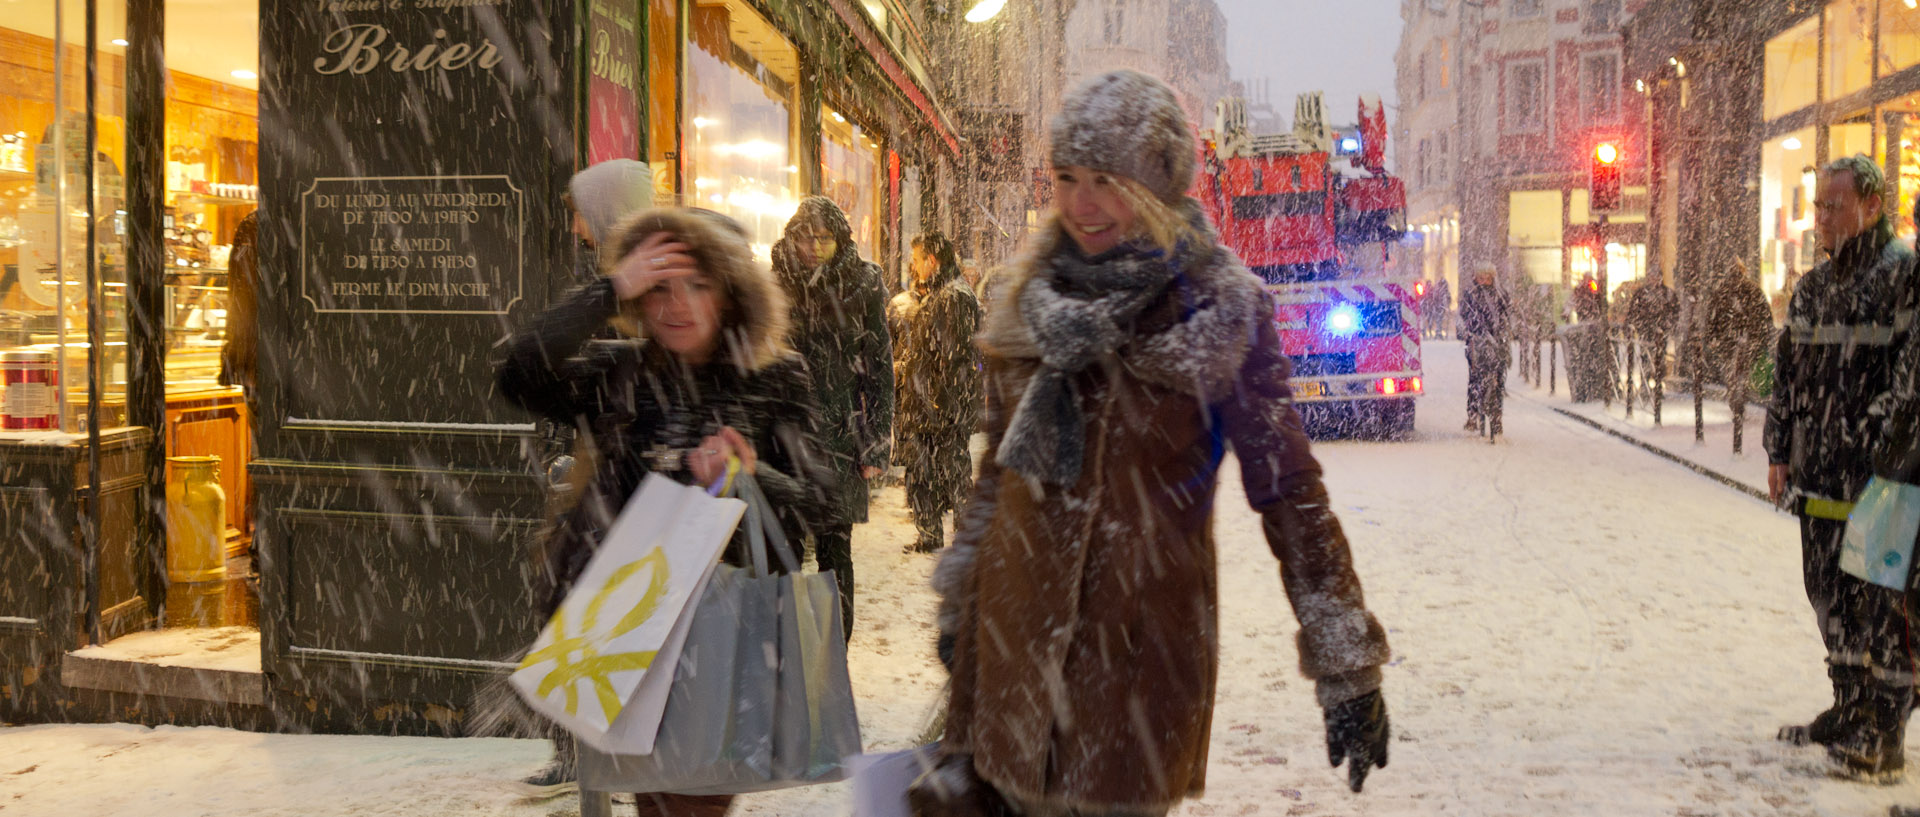 Jeunes femmes sous la neige avec des paquets, rue Esquermoise, à Lille.